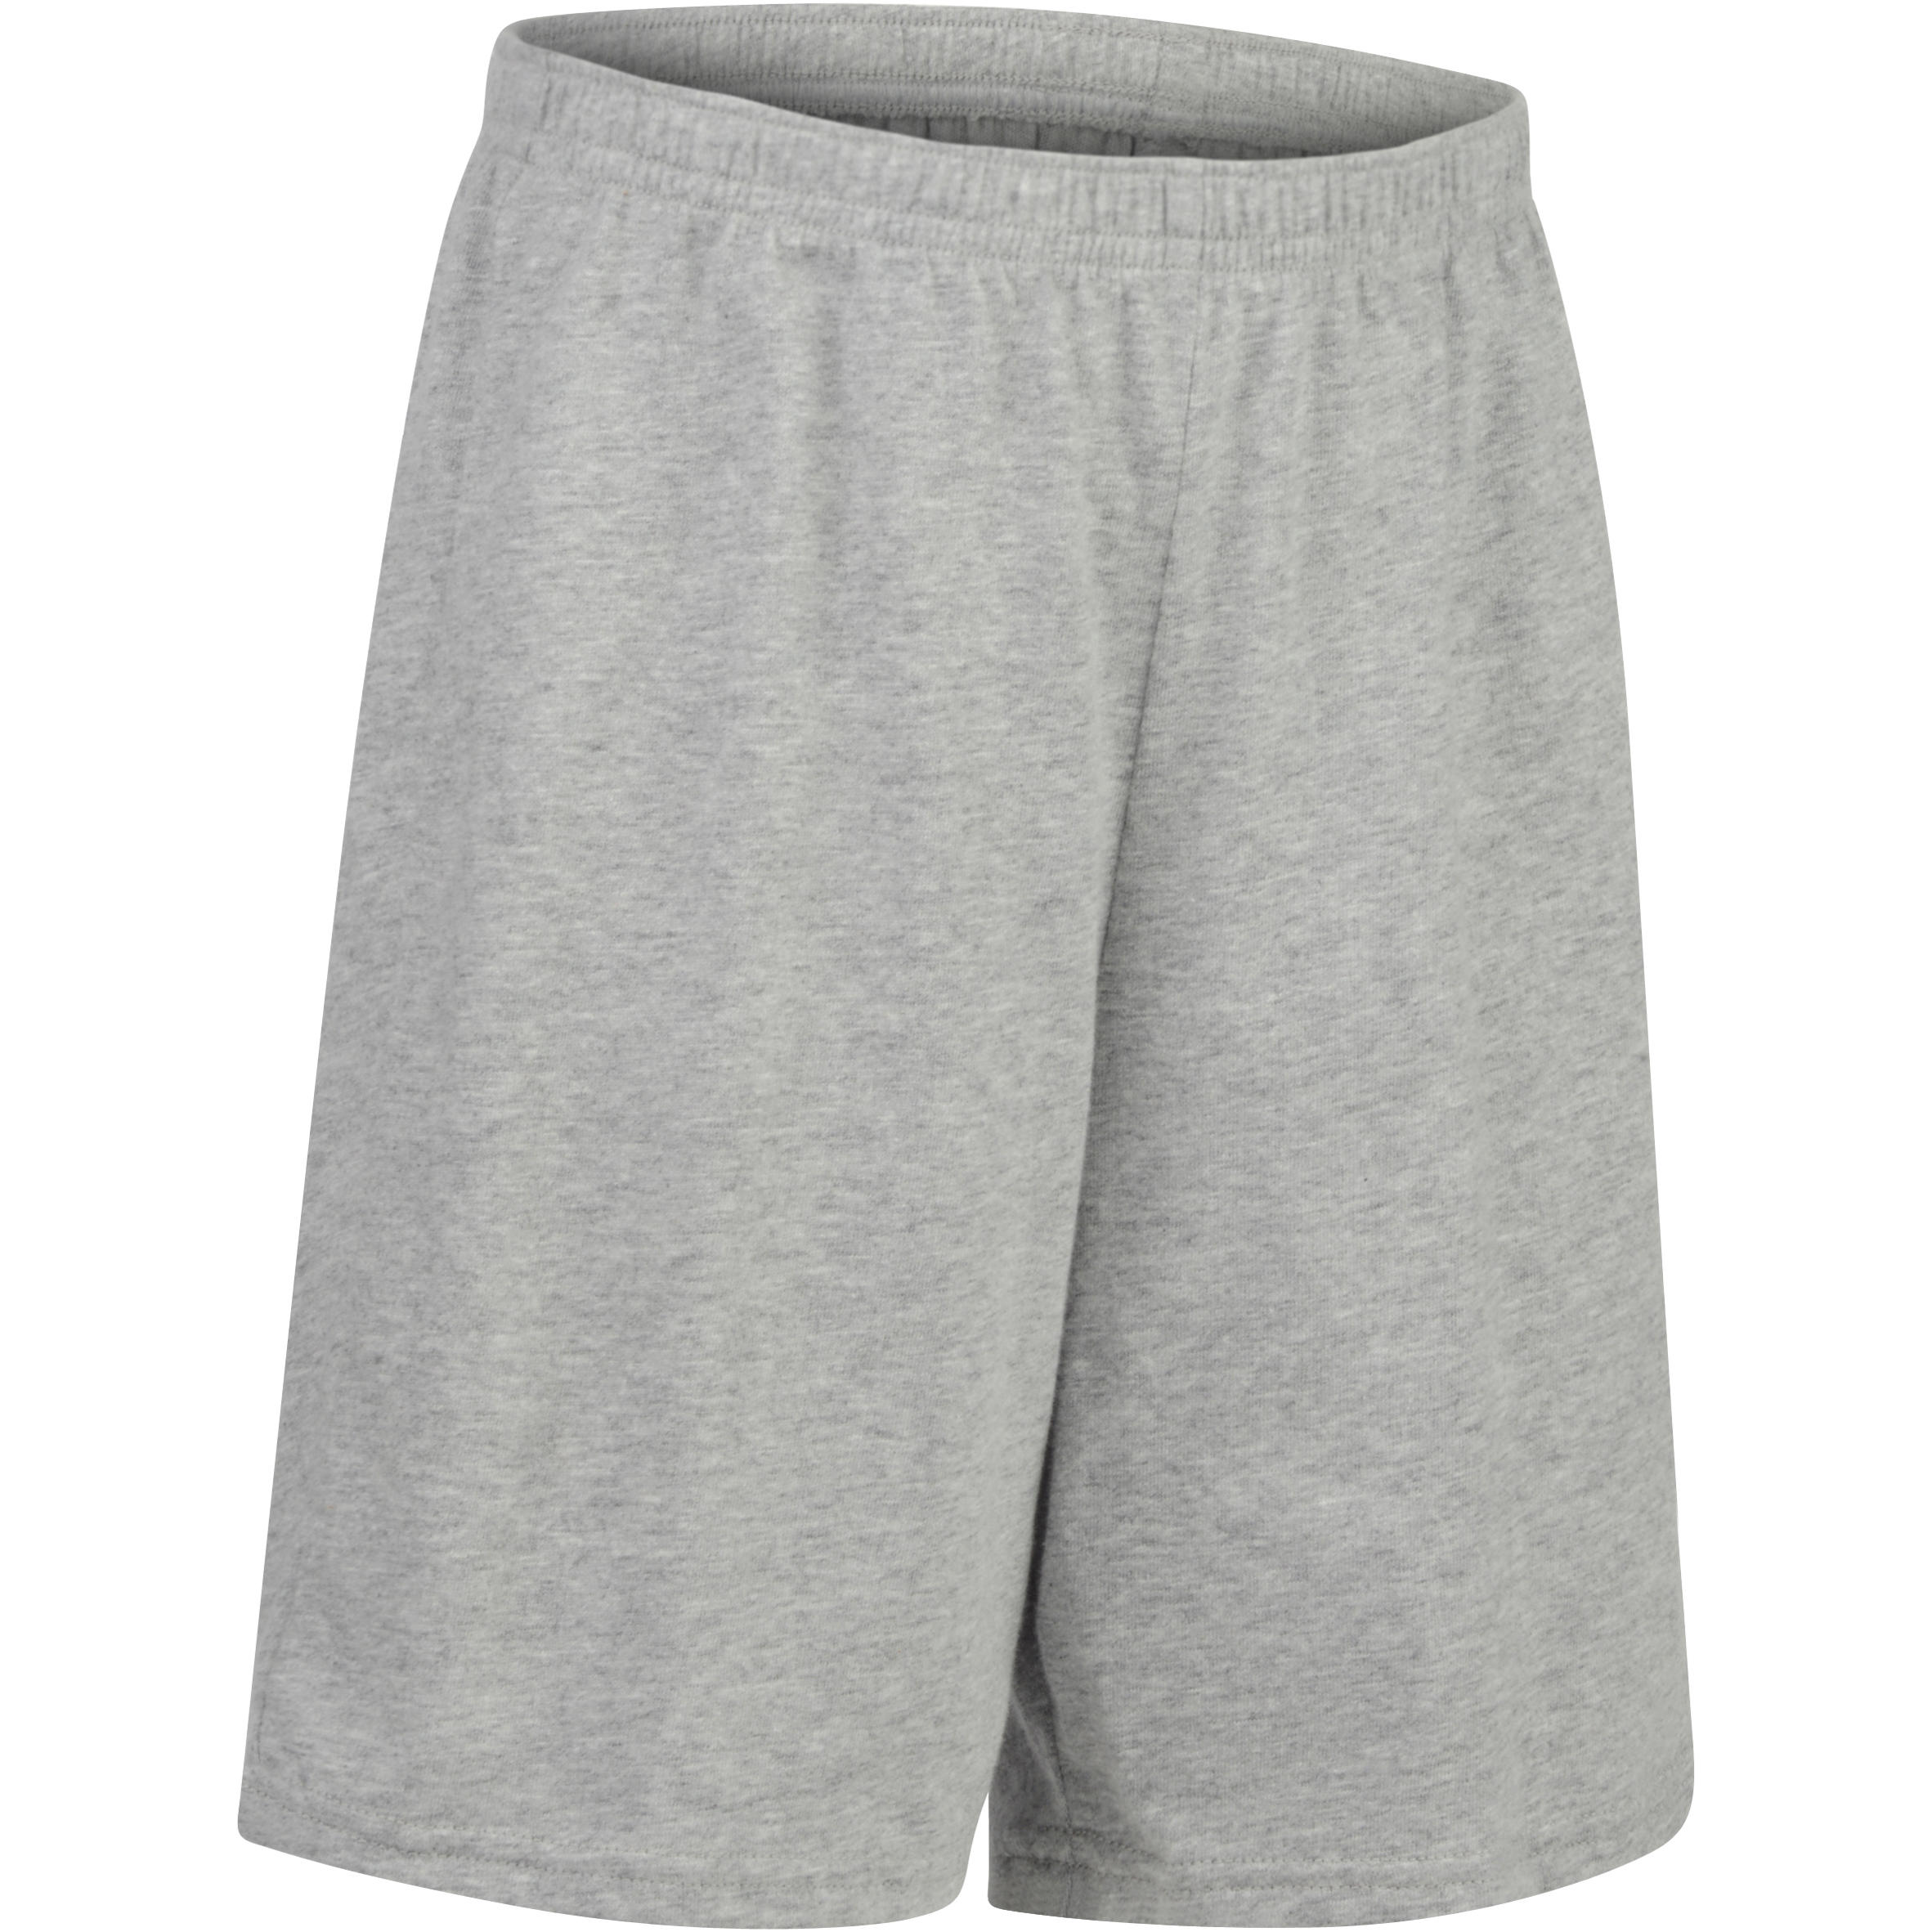 Boys Gym Shorts 100 - Grey